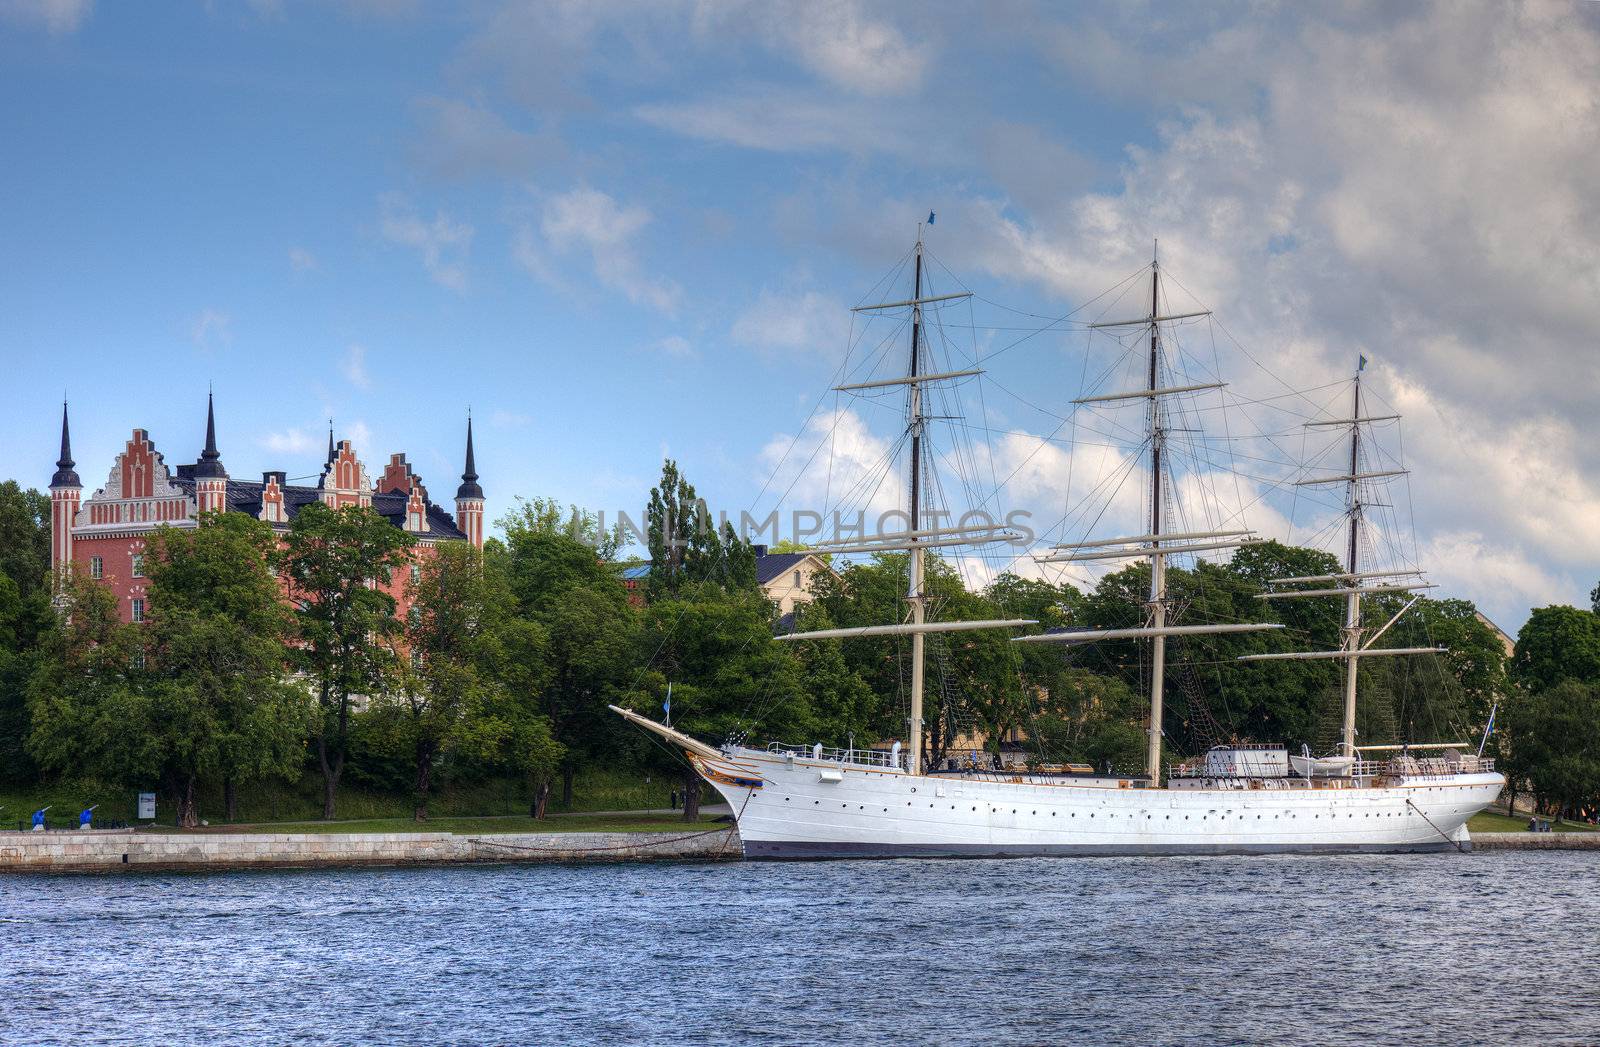 Old sweden war ship in Stockholm harbor, scandinavian Europe. by borodaev